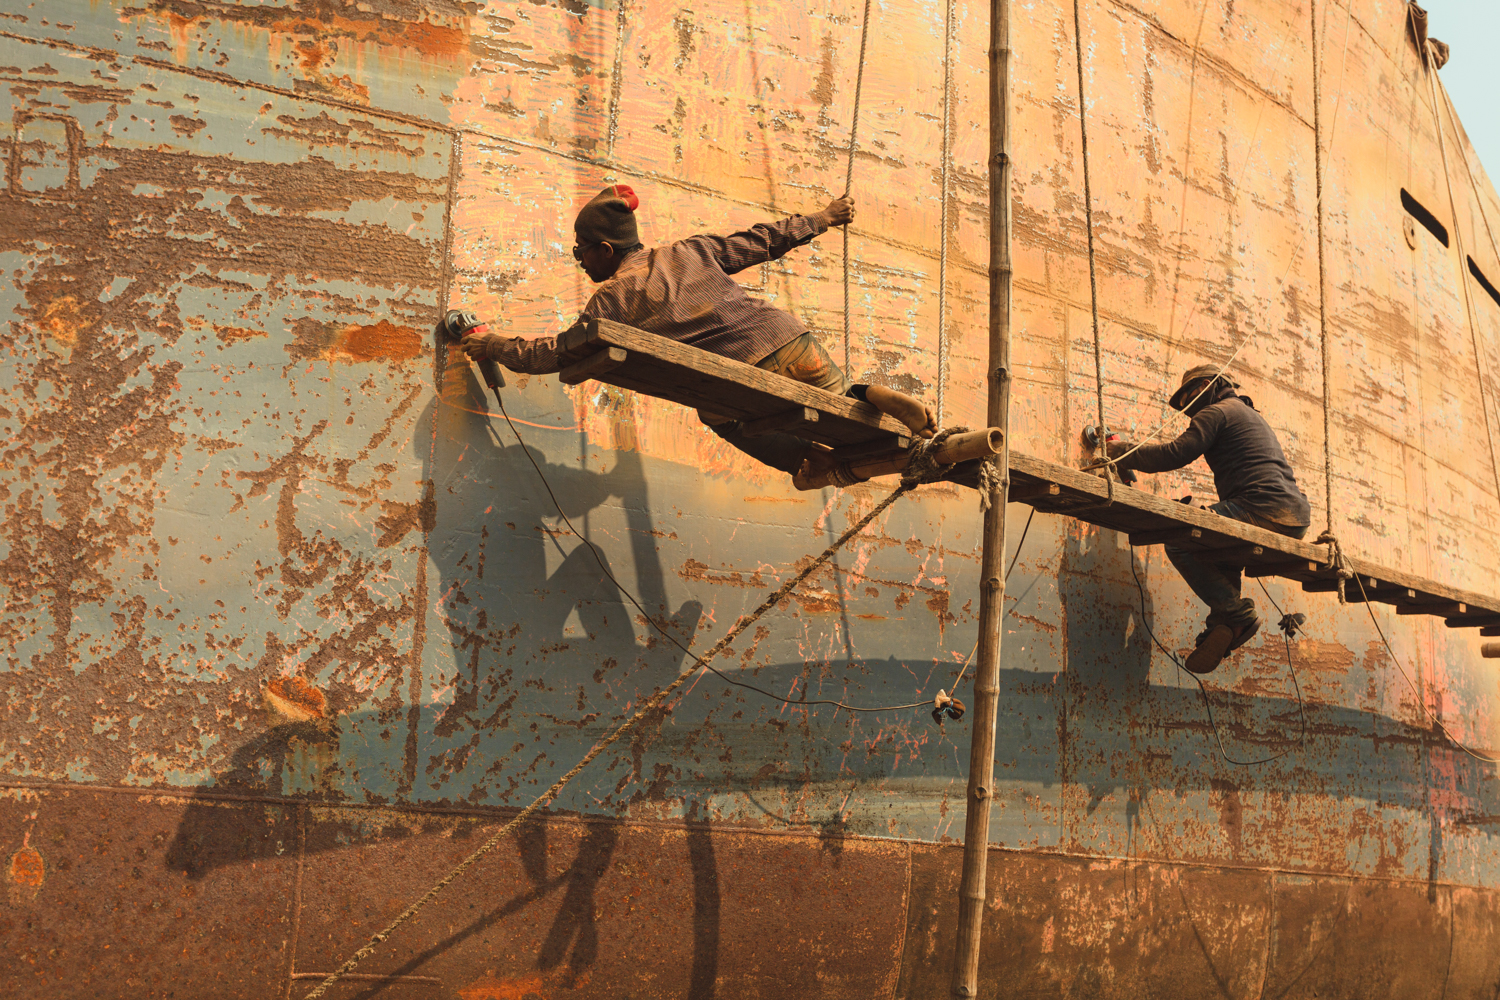 Hanging precariously off platform during repairs at Dhaka, Bangladesh Shipyard.